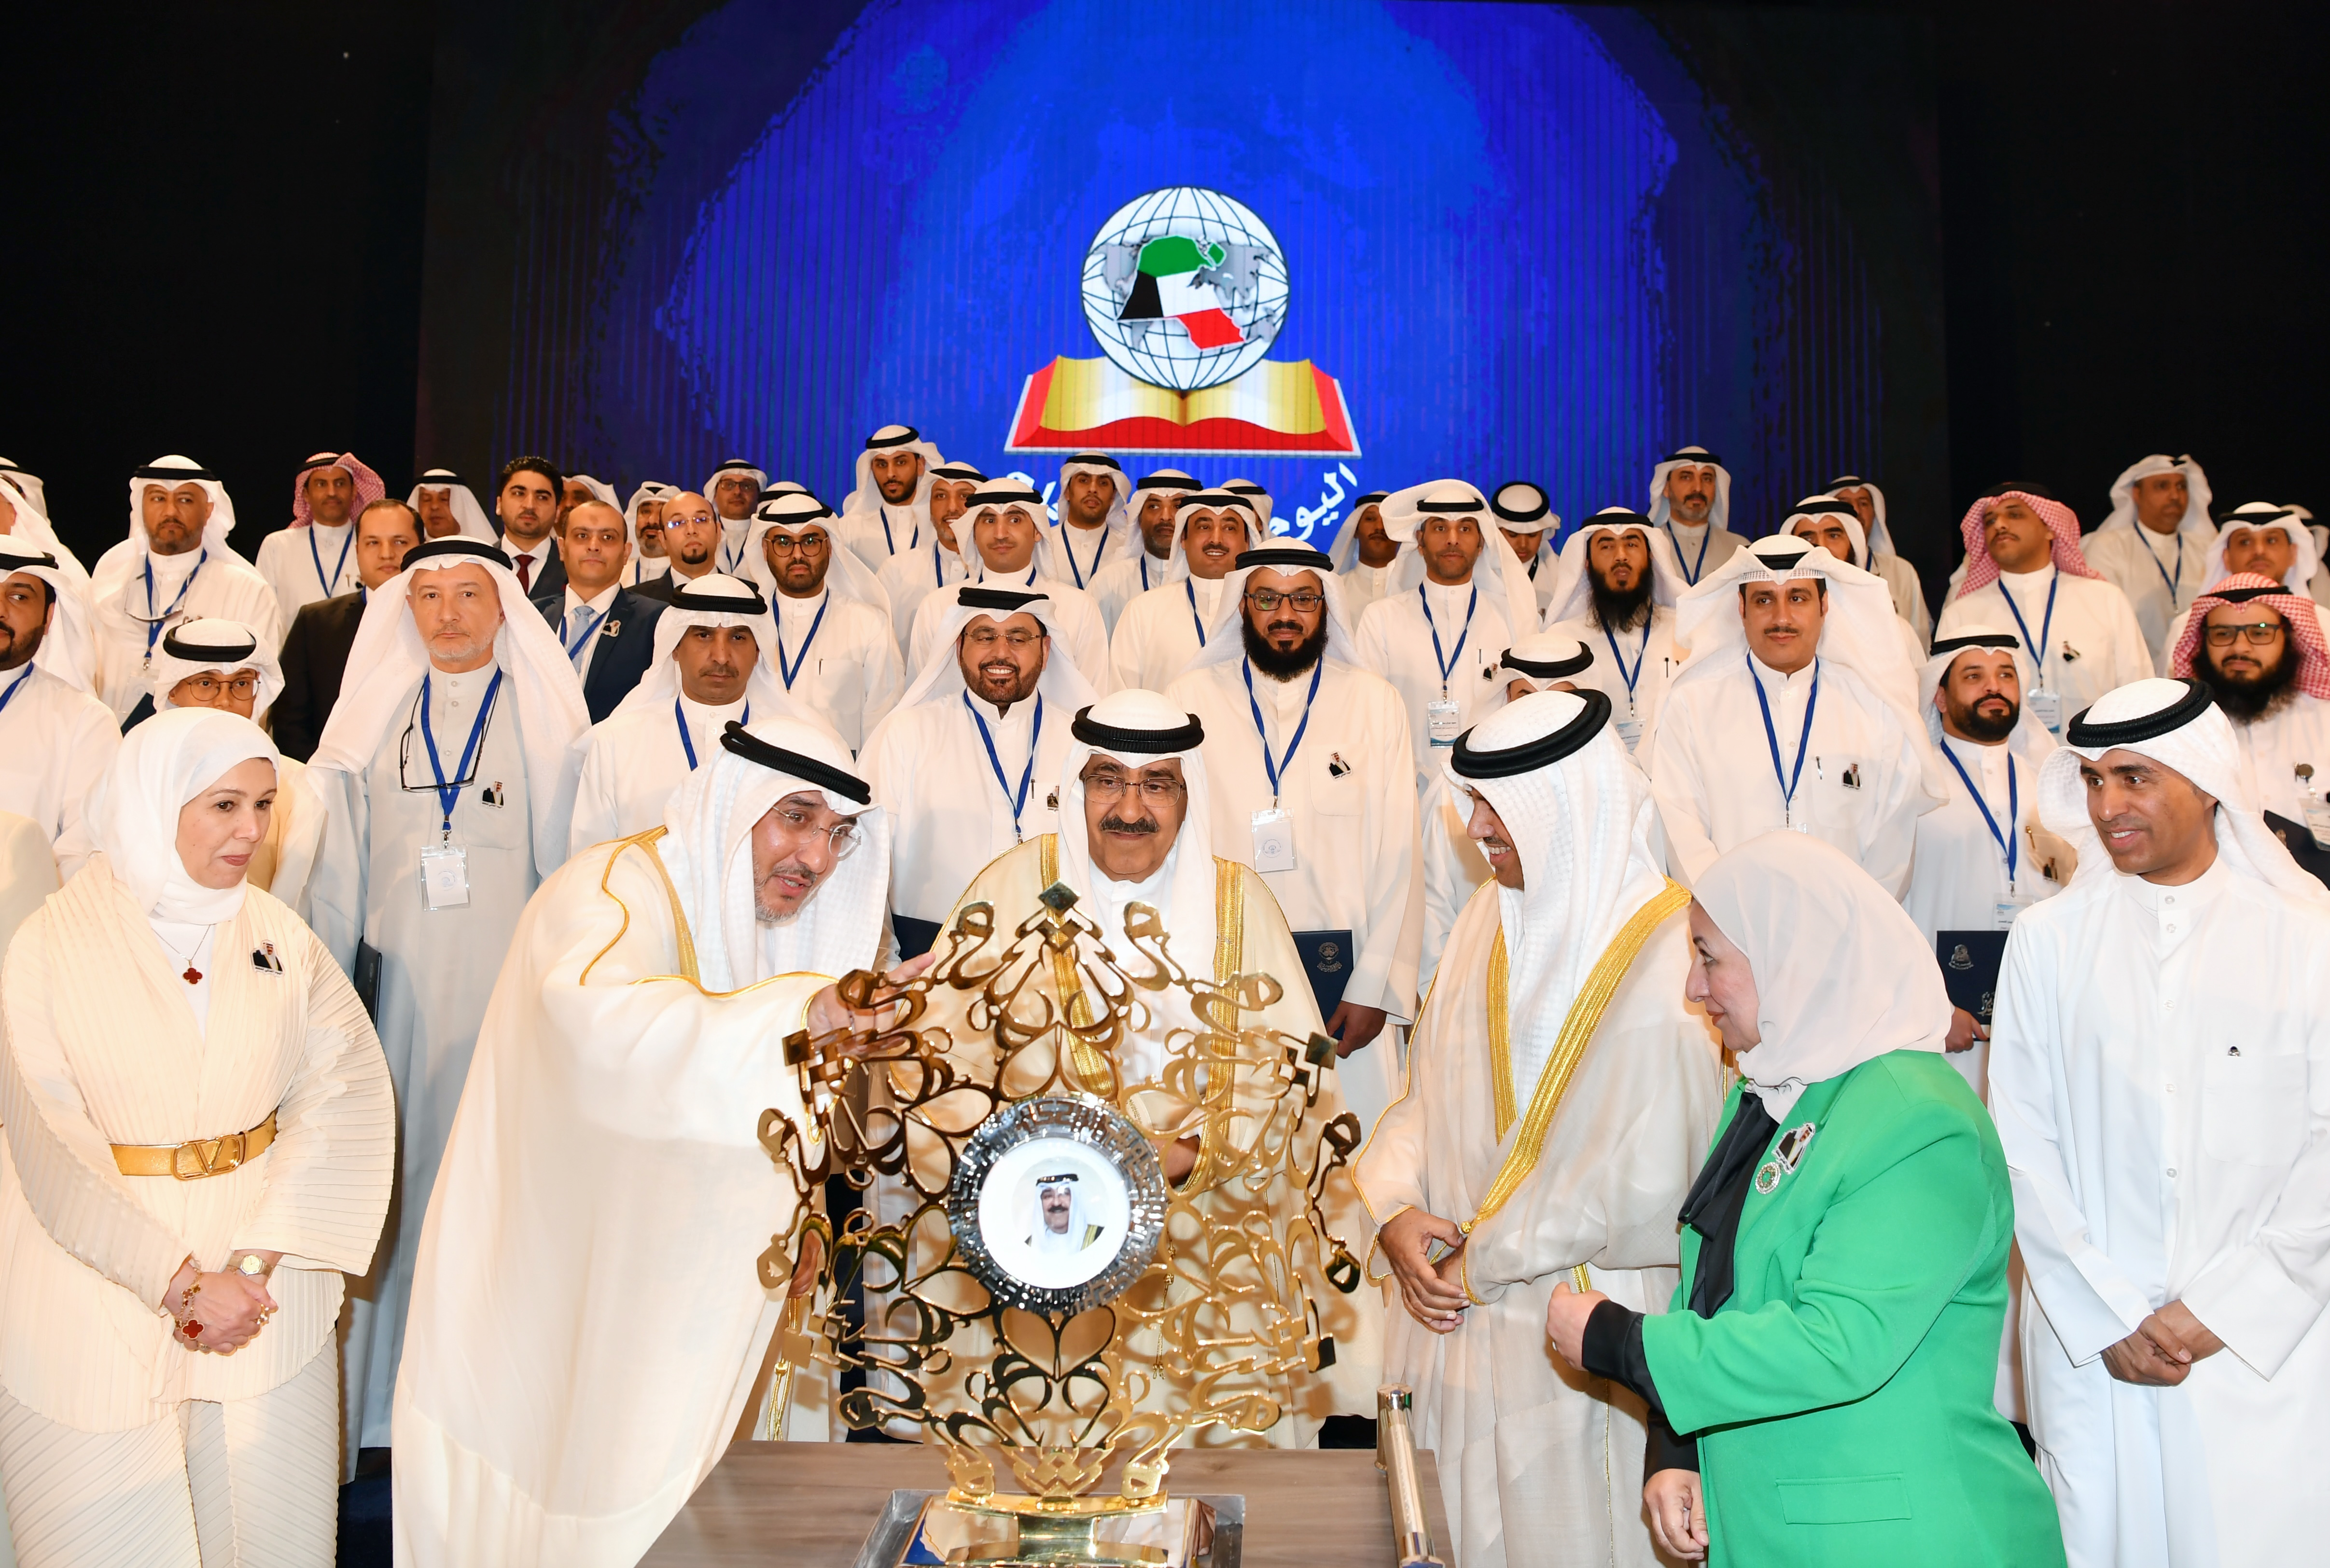 صاحب السمو أمير البلاد الشيخ مشعل الأحمد الجابر الصباح يتسلم هدية تذكارية بهذه المناسبة